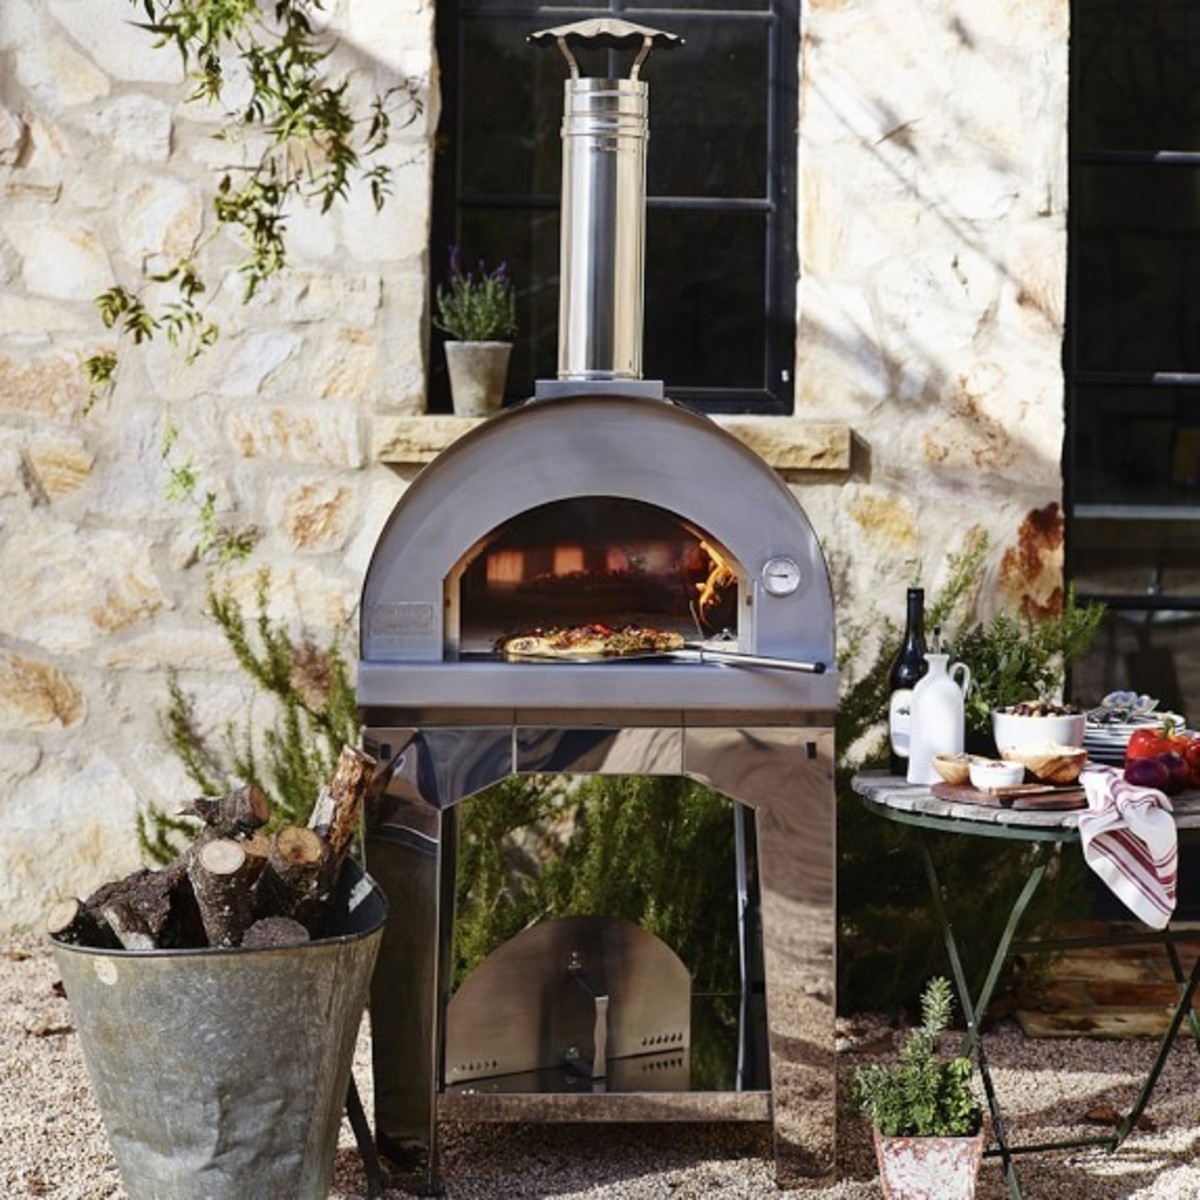 Forno Toscano Margherita Multi Function Outdoor Pizza Oven + Accessories + Cover